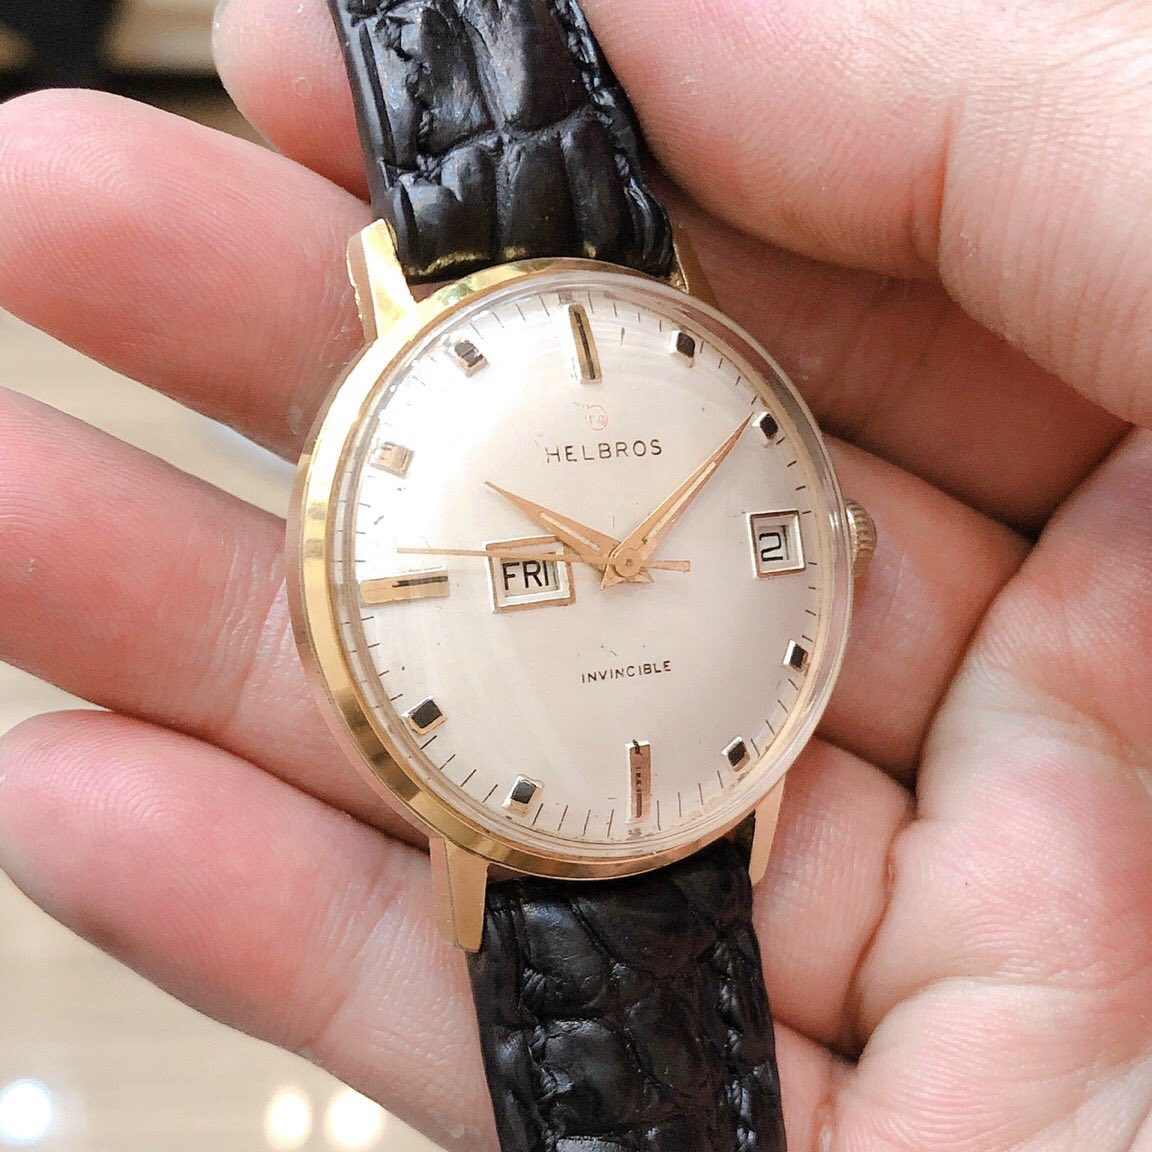 Đồng hồ cổ Hebros lên dây lacke 18k chính hãng Pháp